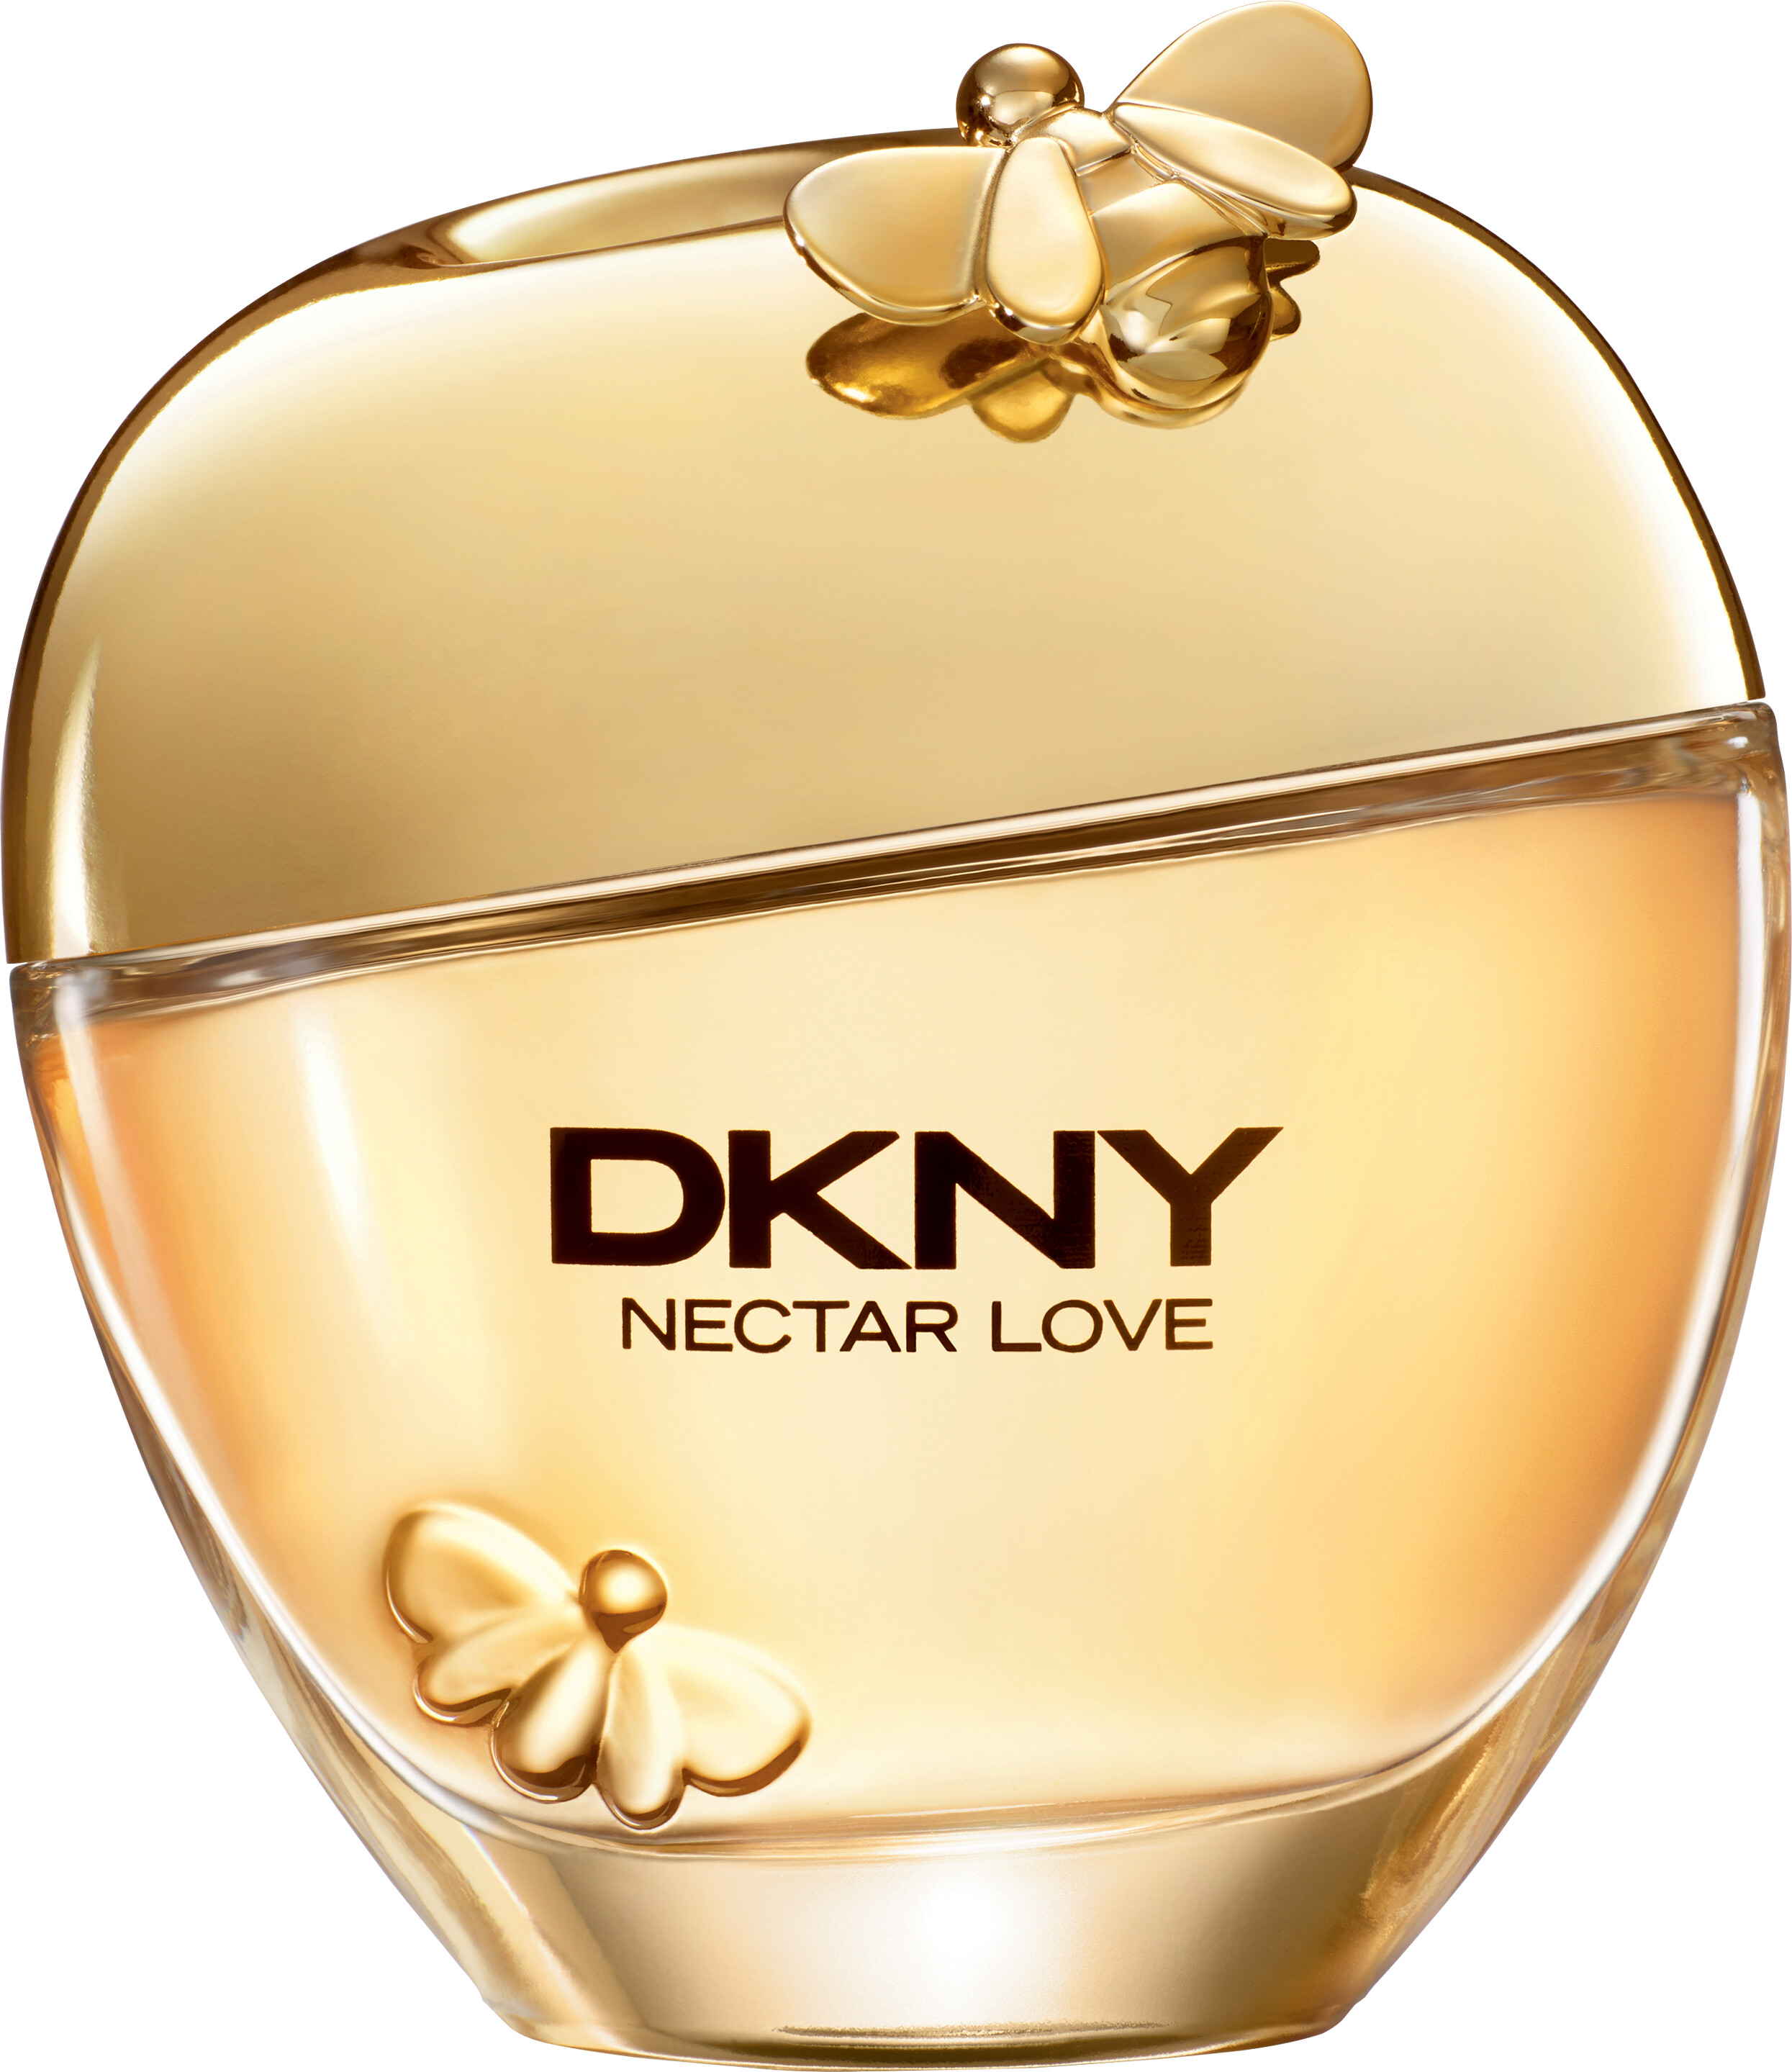 DKNY Nectar Love Eau de Parfum Spray 100ml